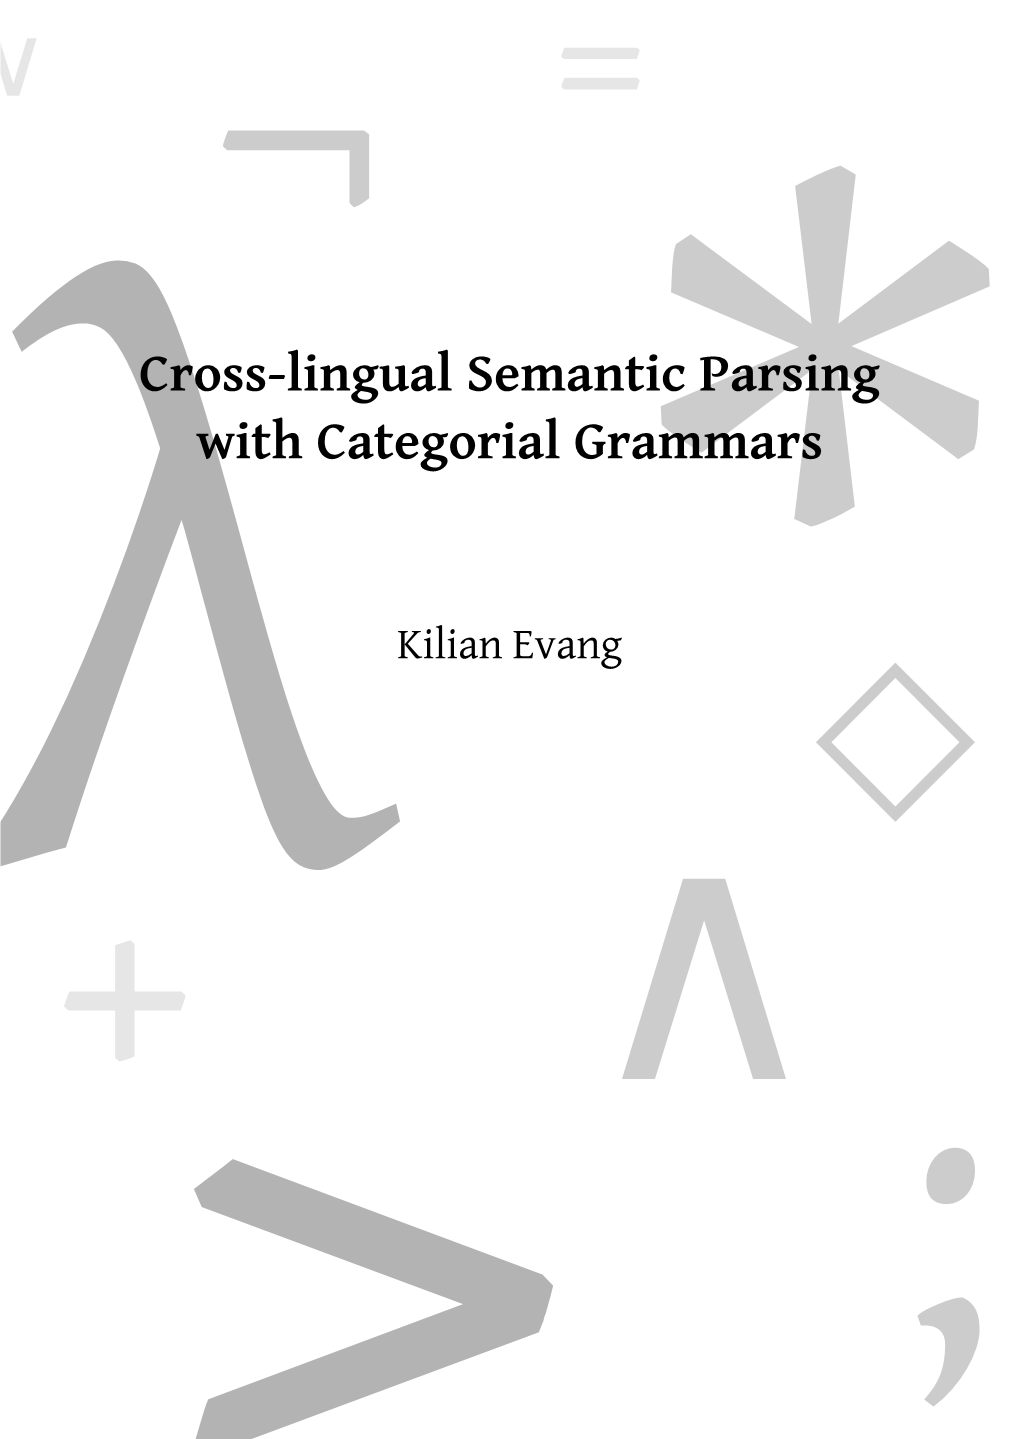 *Λcross-Lingual Semantic Parsing with Categorial Grammars